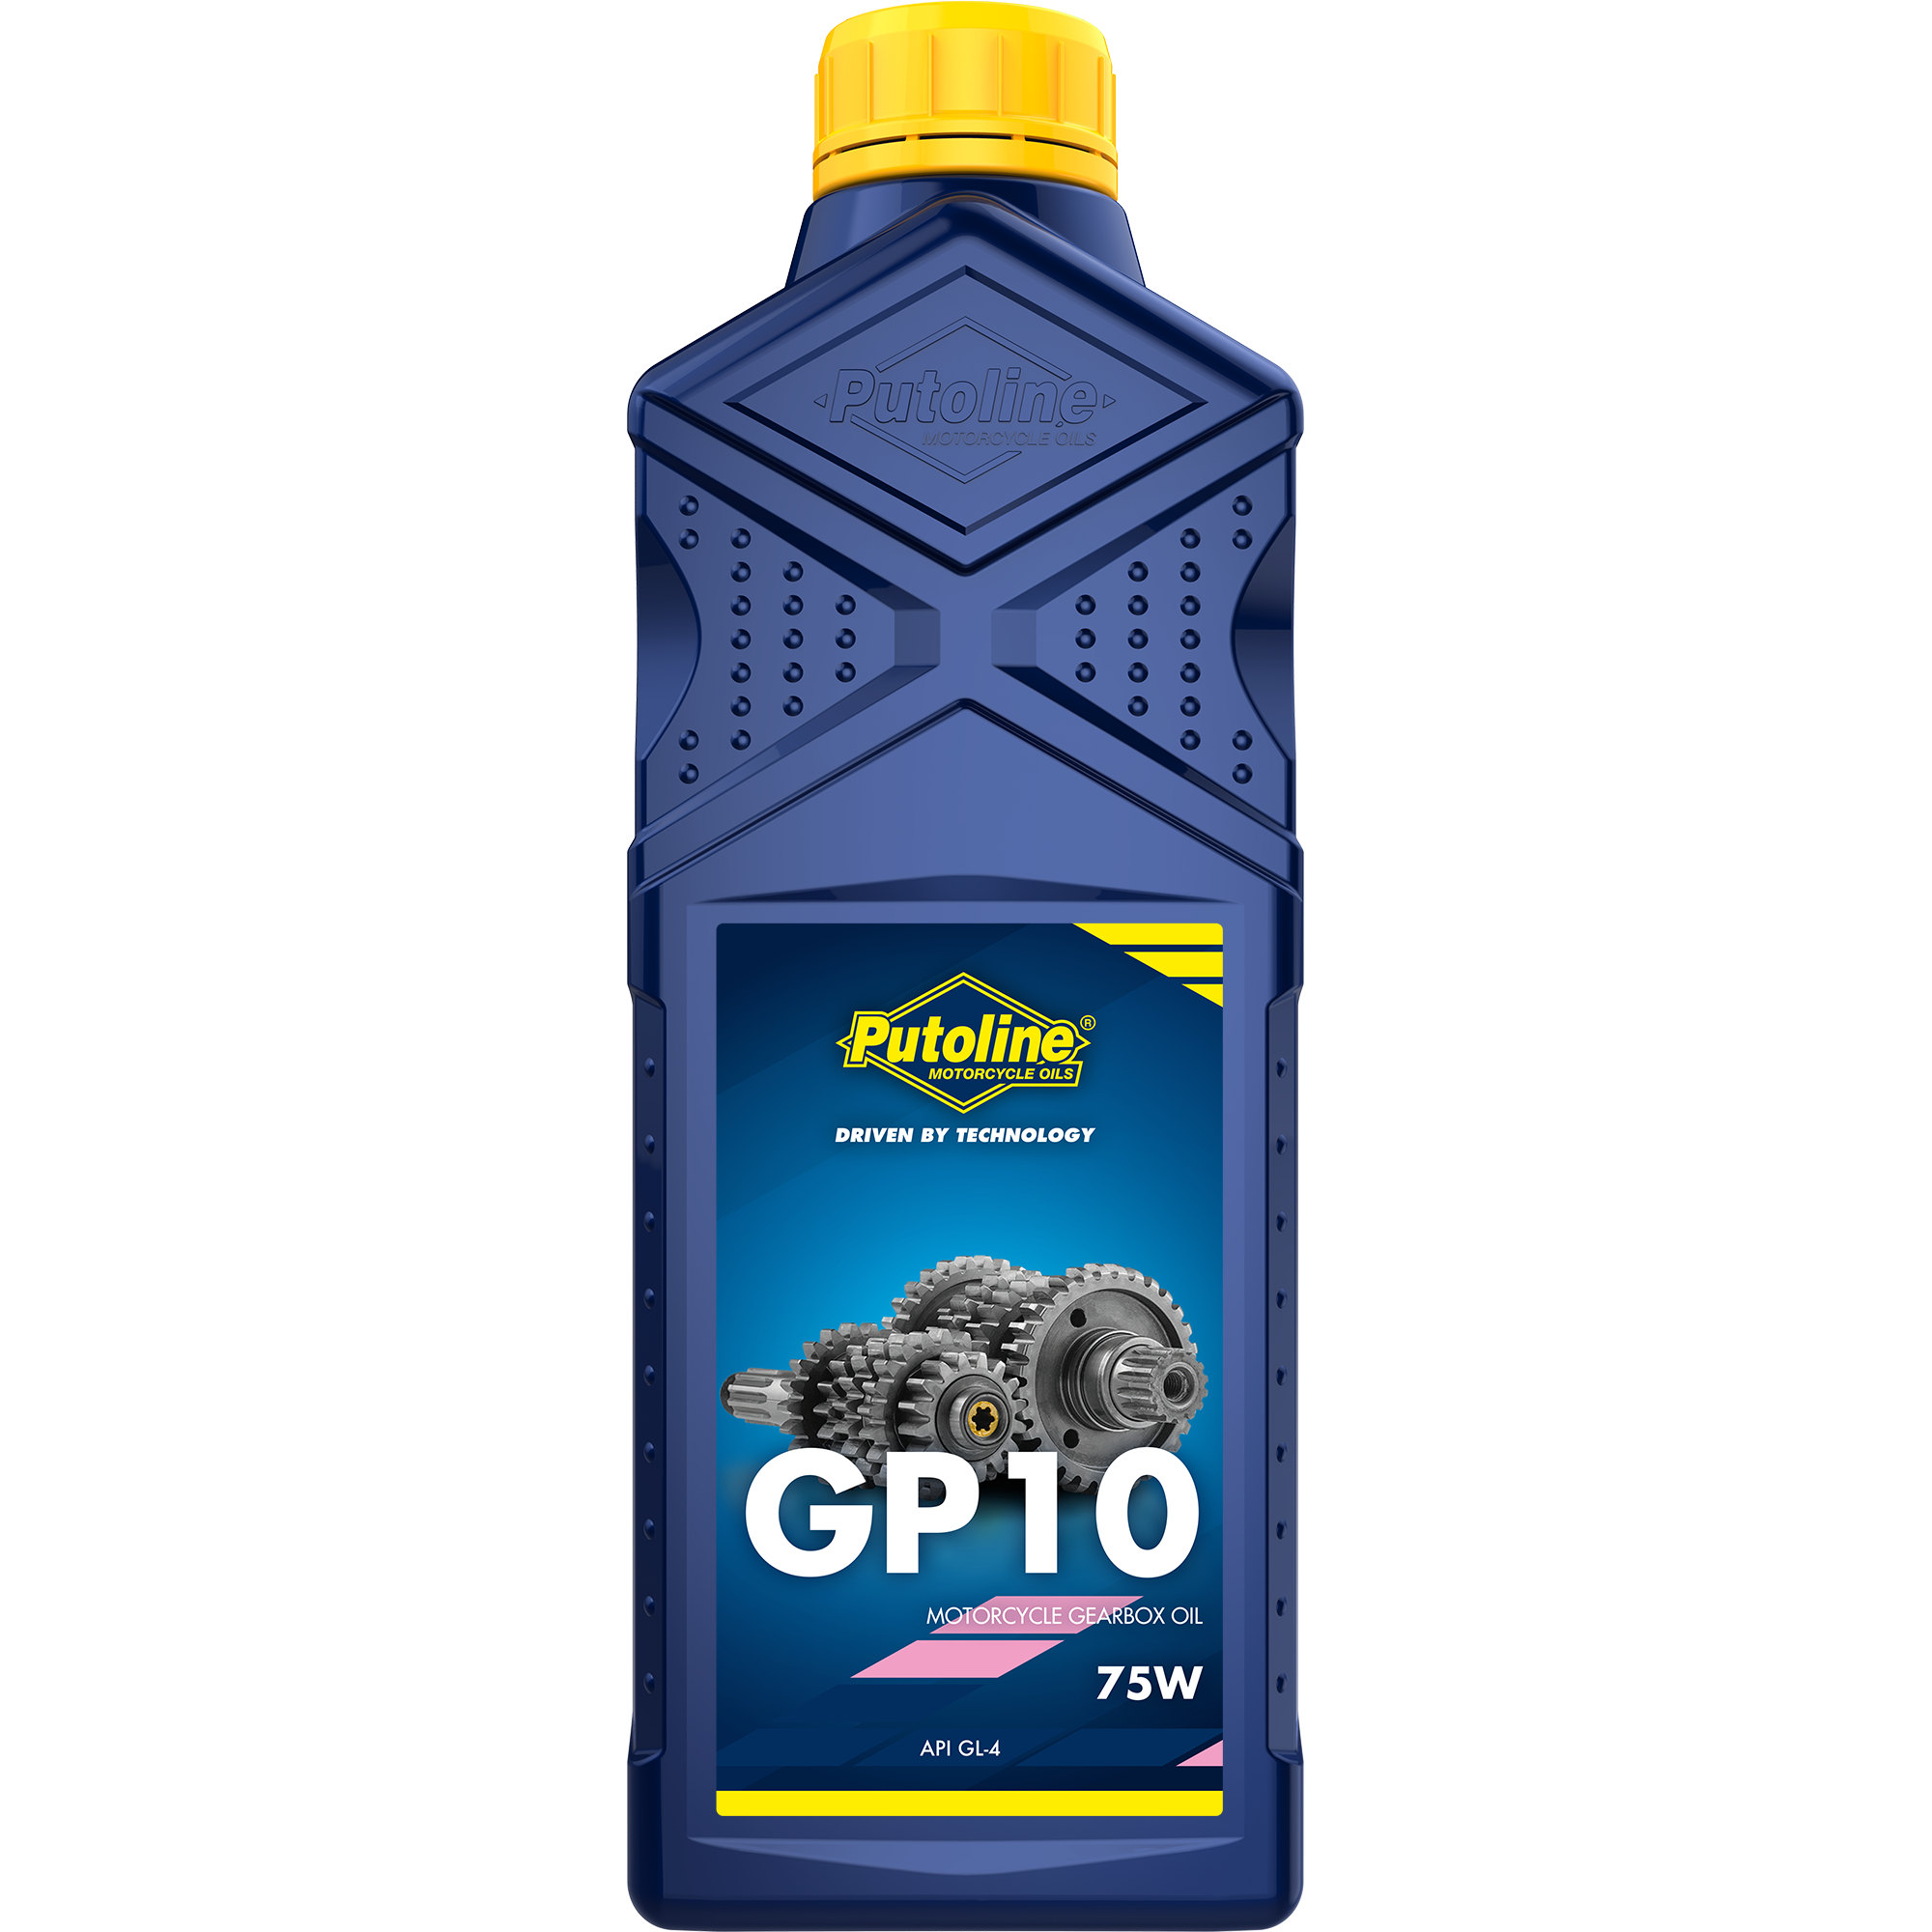 Putoline GP 10 75W, 12 x 1 lt detail 2